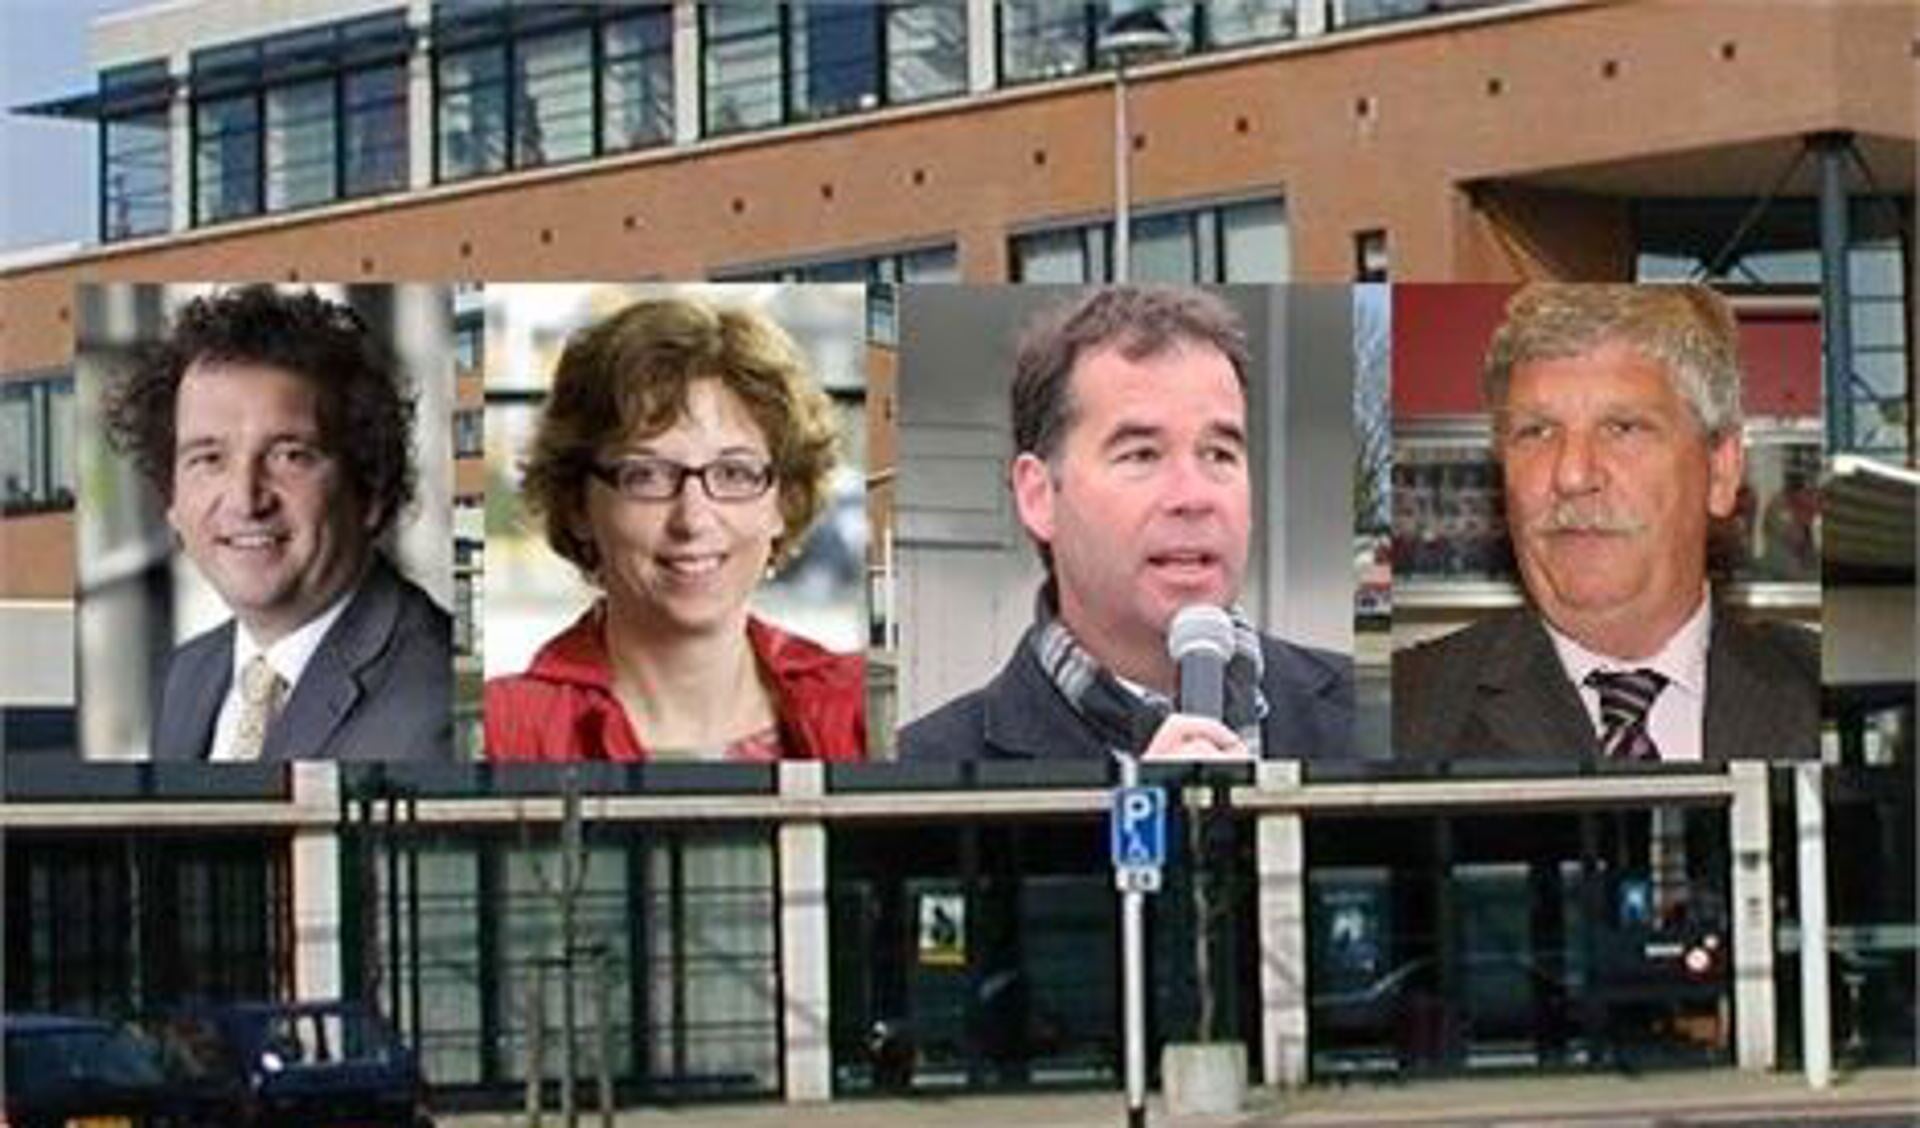 Nico Oudhof, Francine van der Jagt, Leo Suijker en Kees van der Kraan.